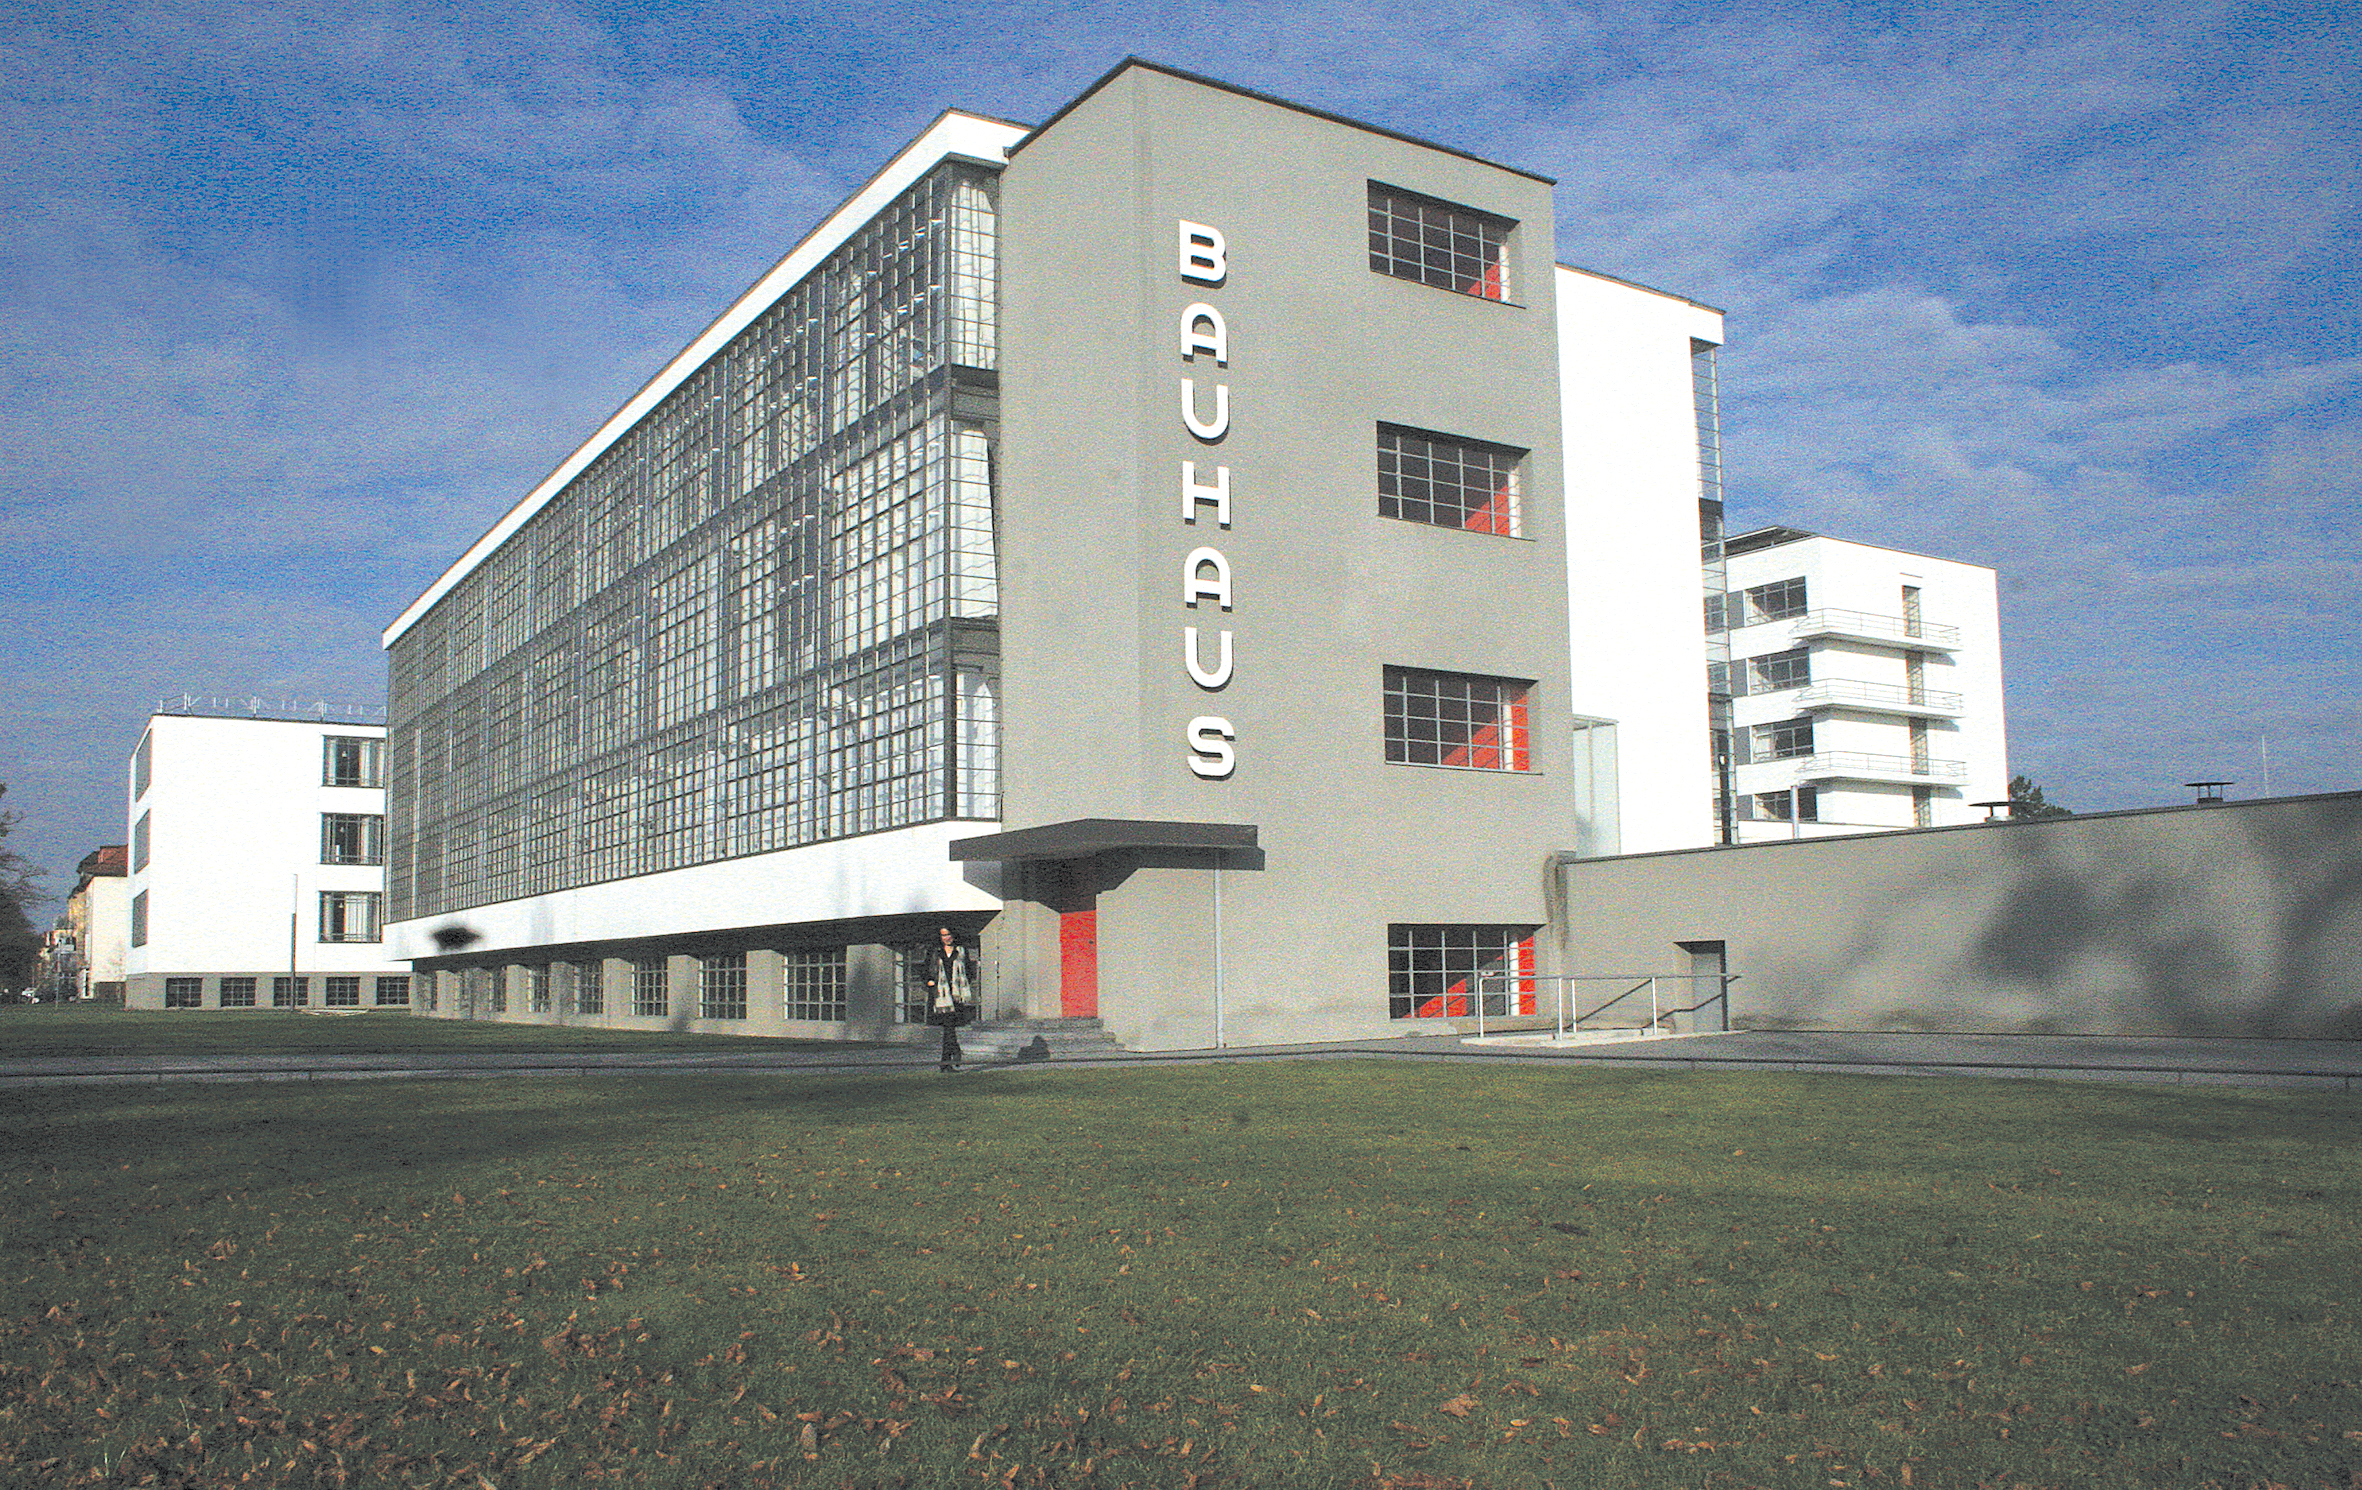 Trīs gadus Karīnas  mājas bija Desavā,  pilsēta pazīstama  ar Bauhaus arhitektūras  un dizaina skolu